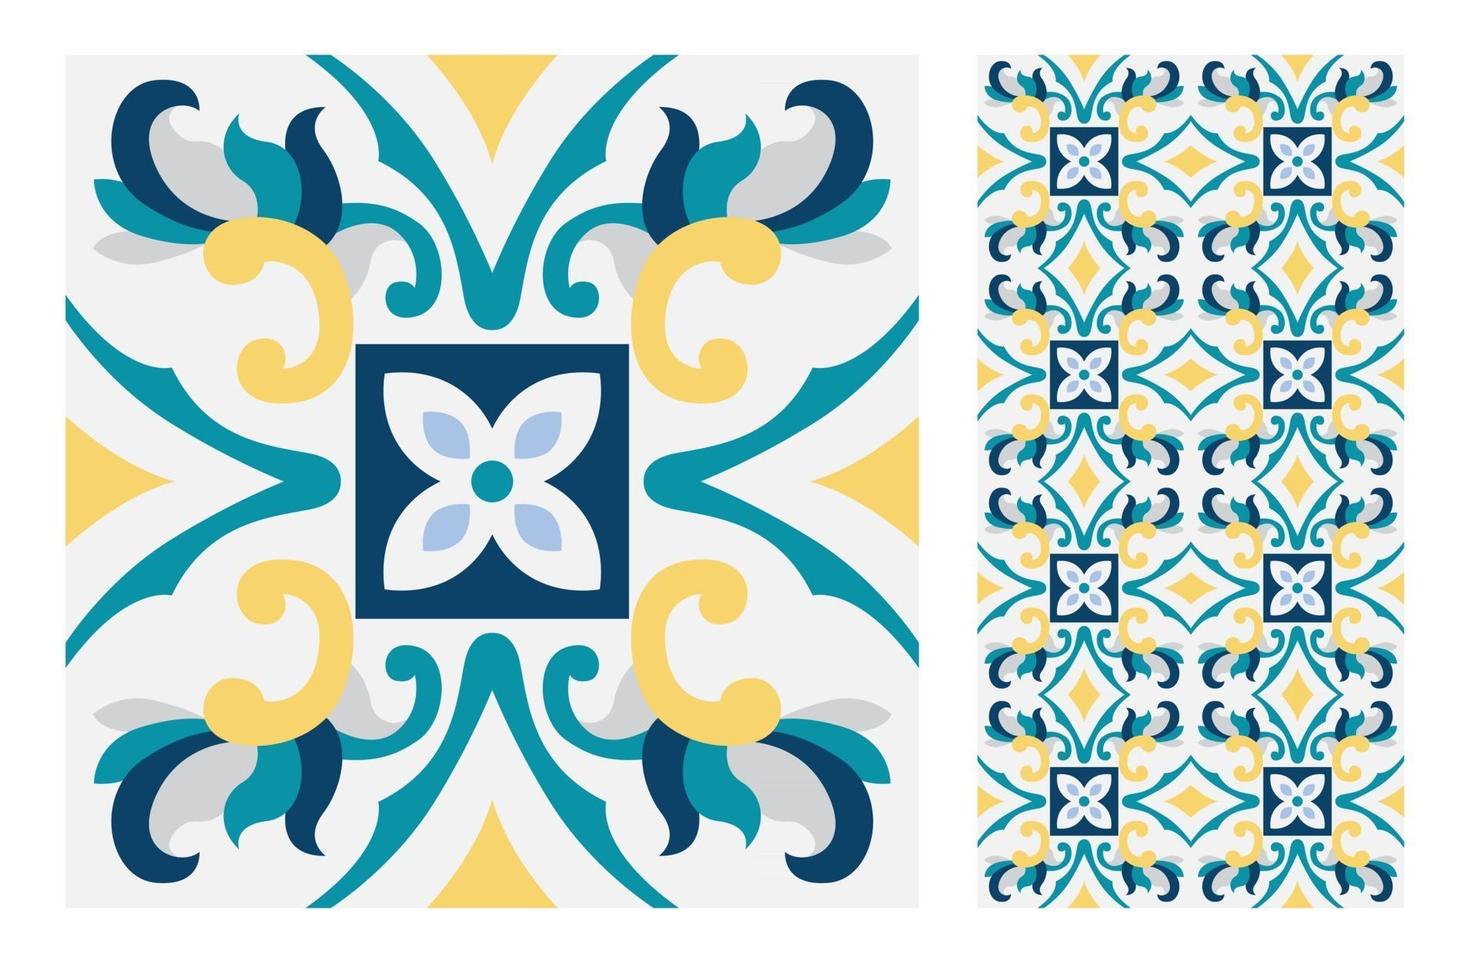 patrones de azulejos vintage antiguo sin costura vector